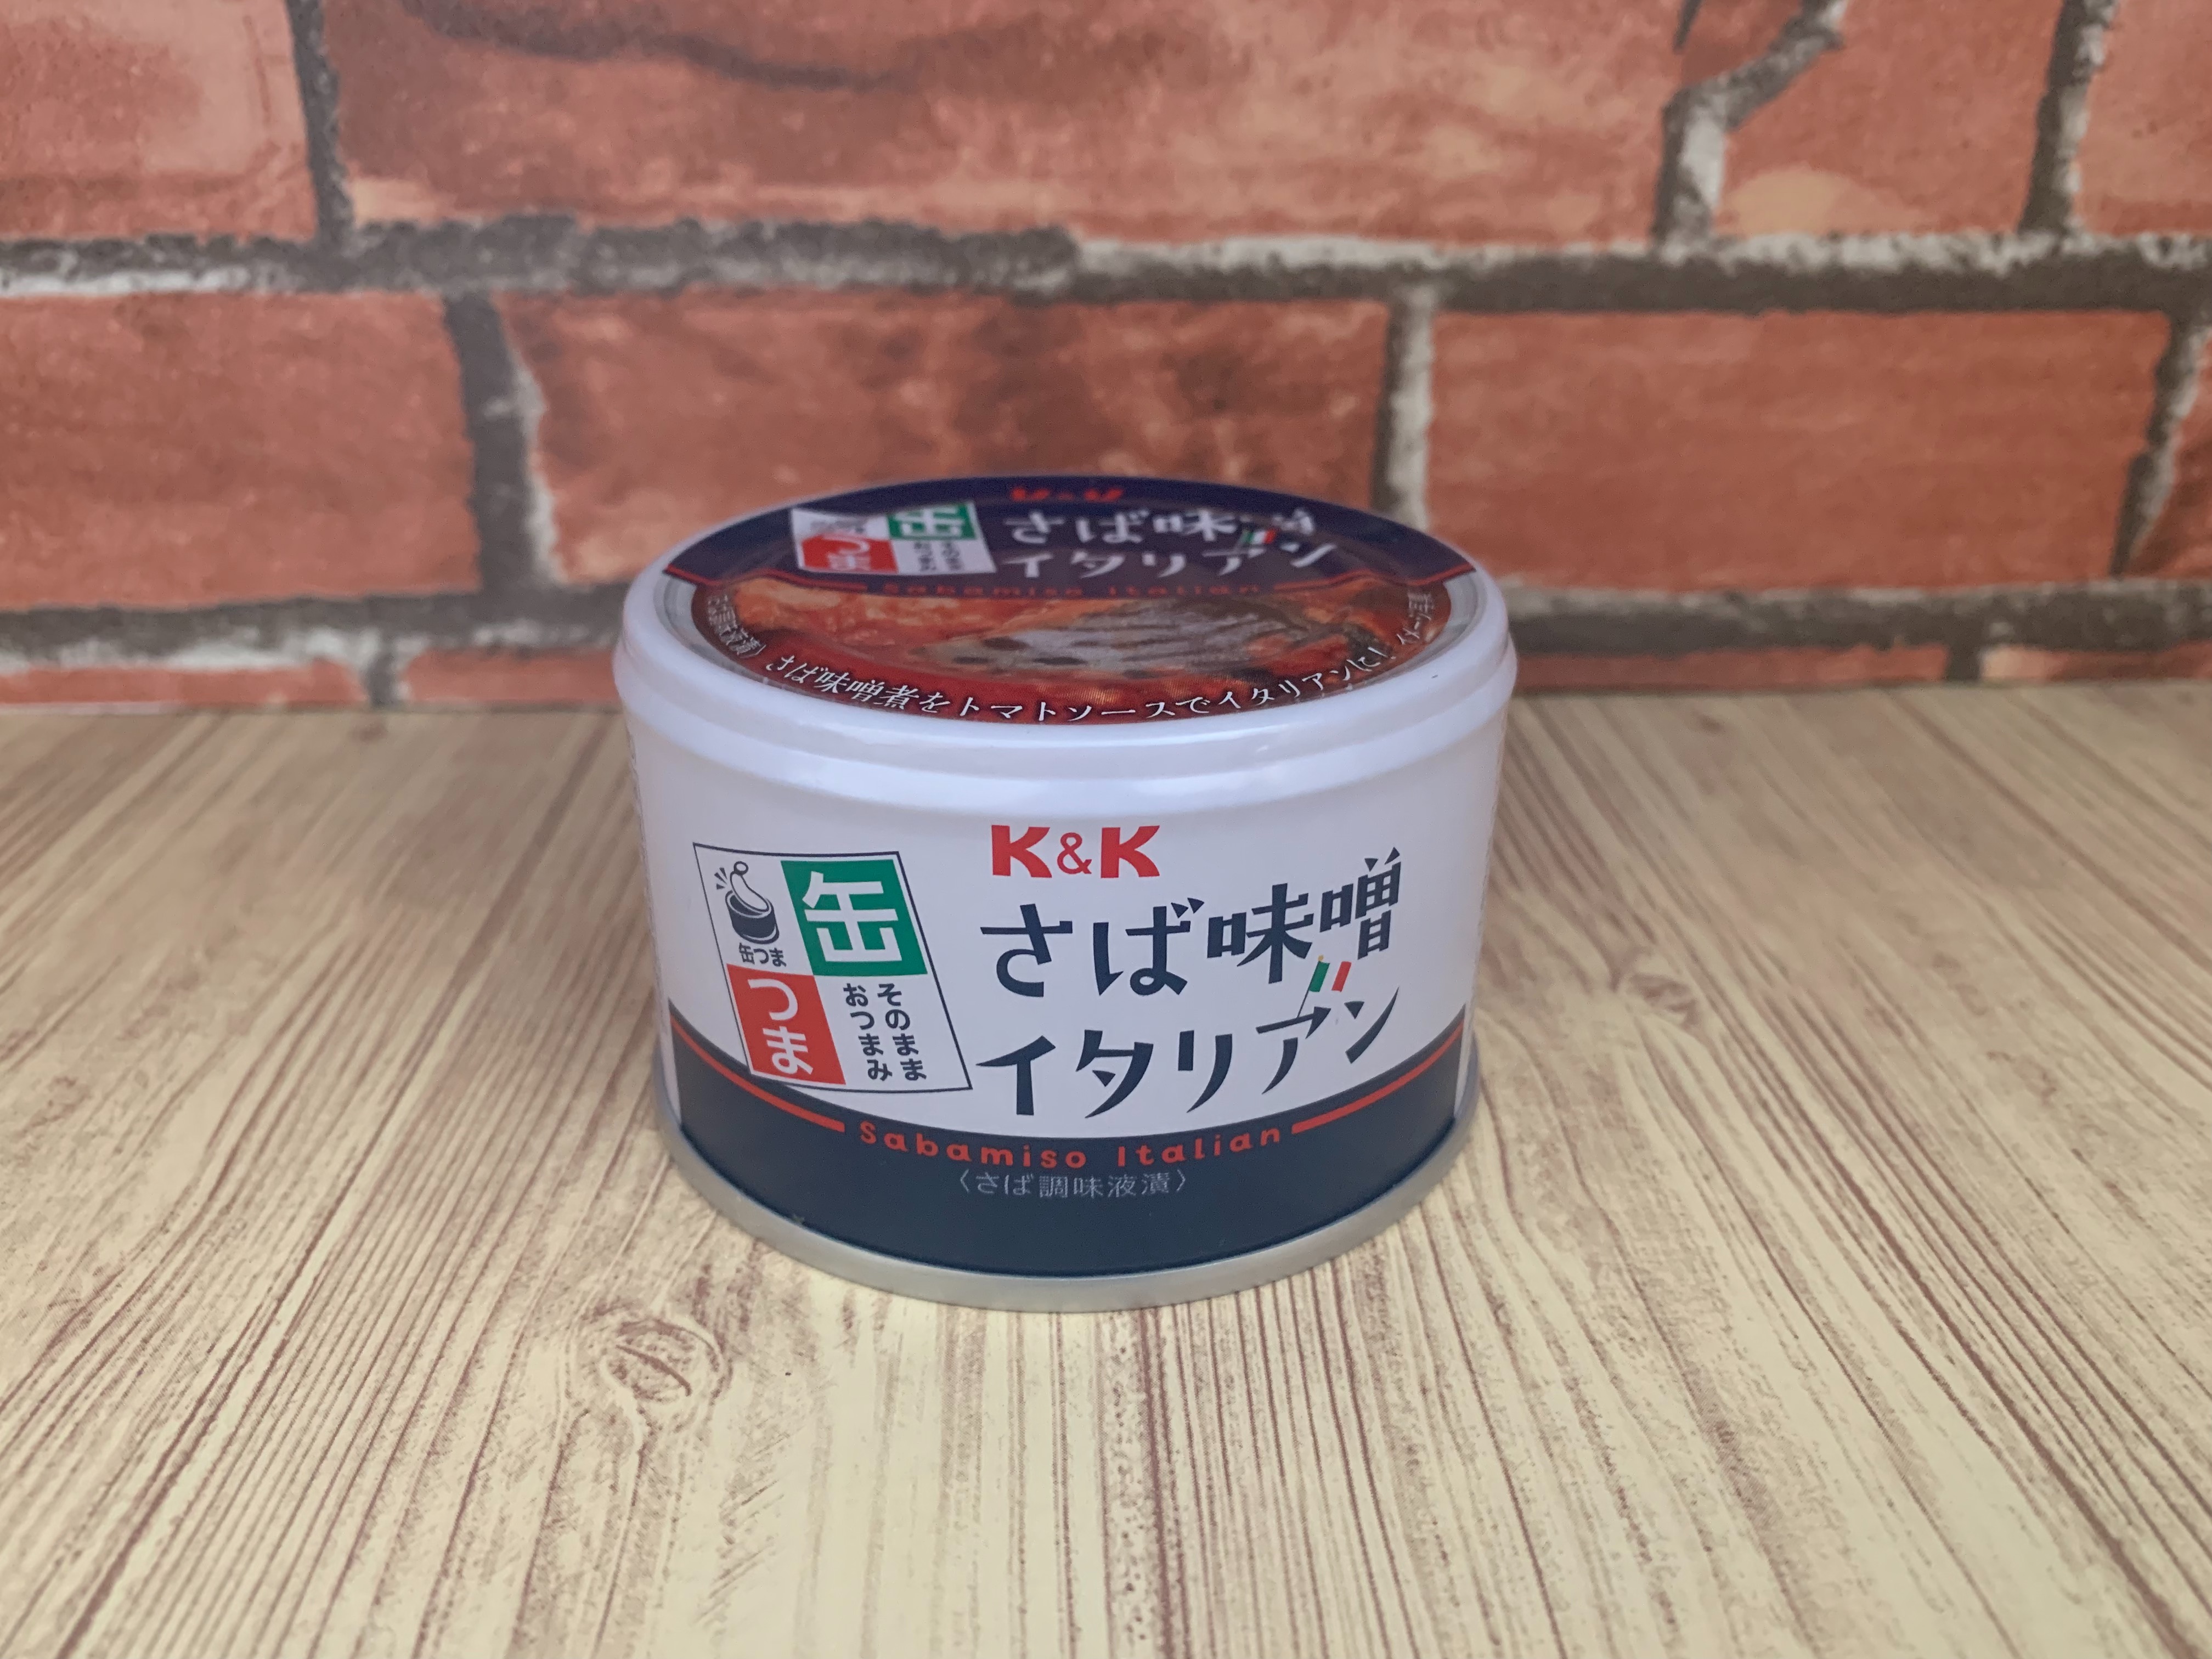 国分オリジナルブランド K&K さば味噌イタリアン 缶つま